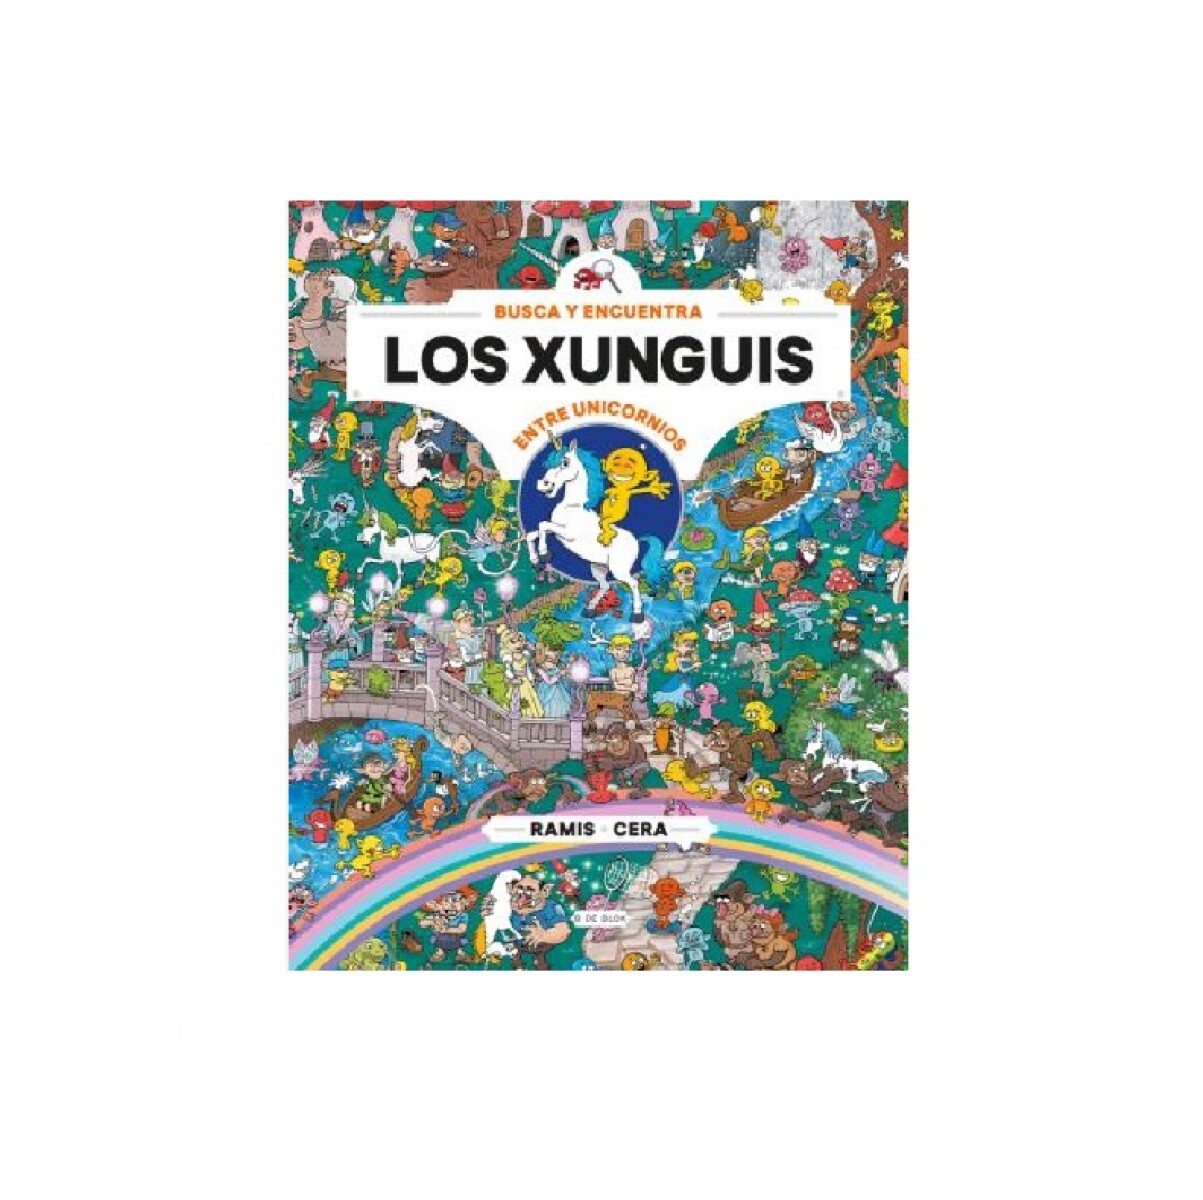 Libro Busca y Encuentra los Xunguis Entre Unicornios - 001 